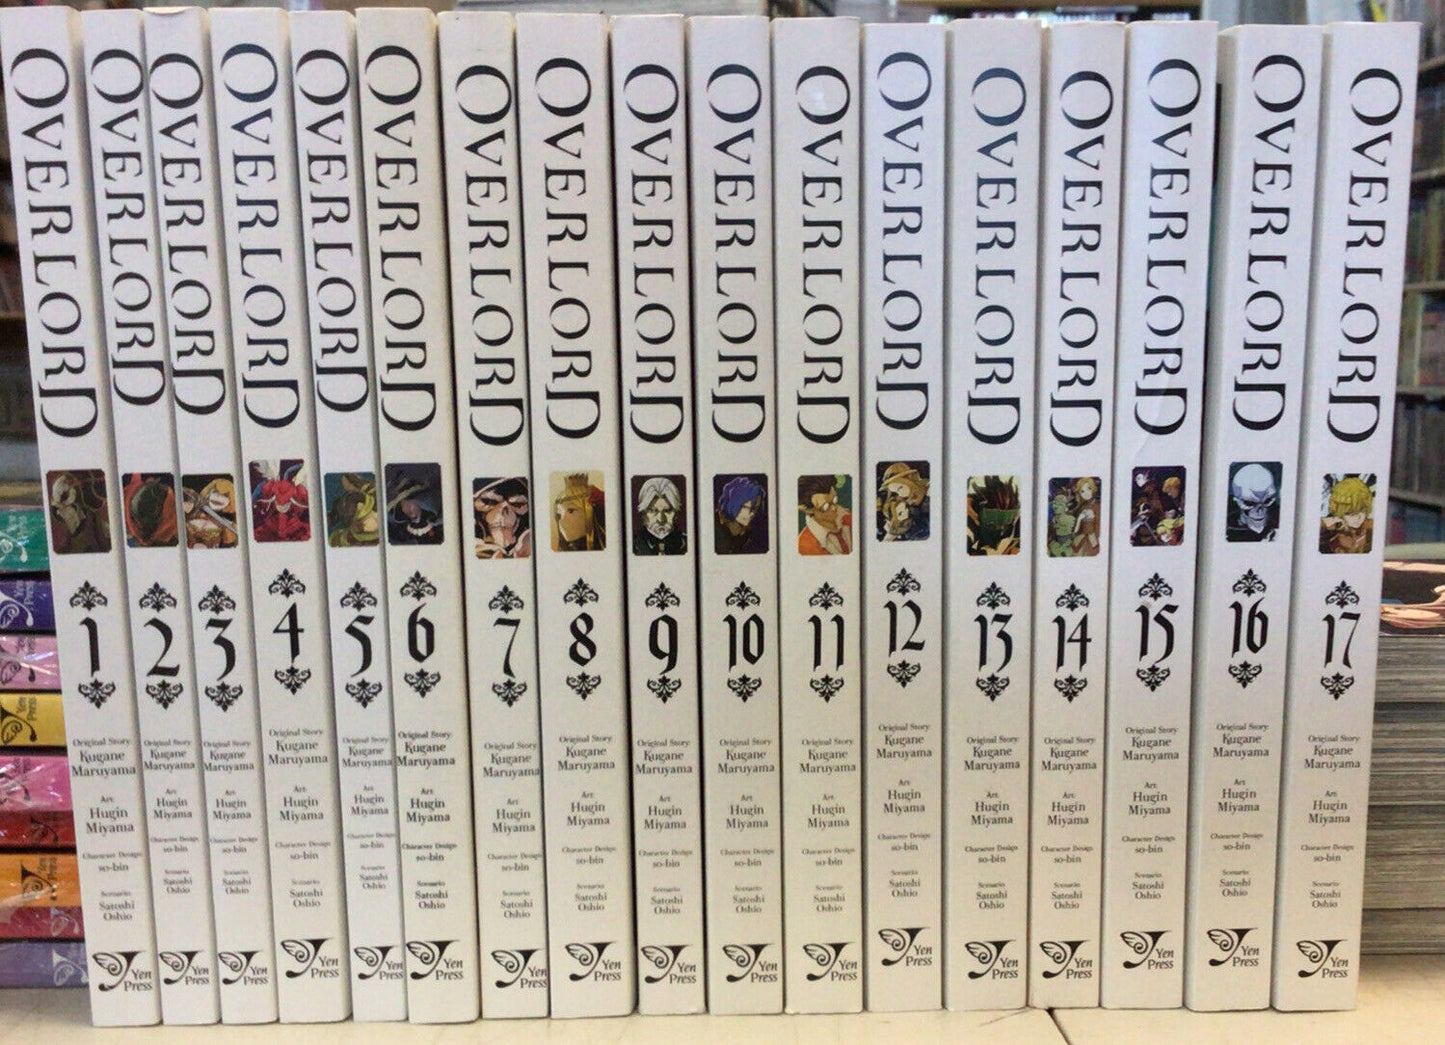 Overlord Manga Collection (v1 - 17)